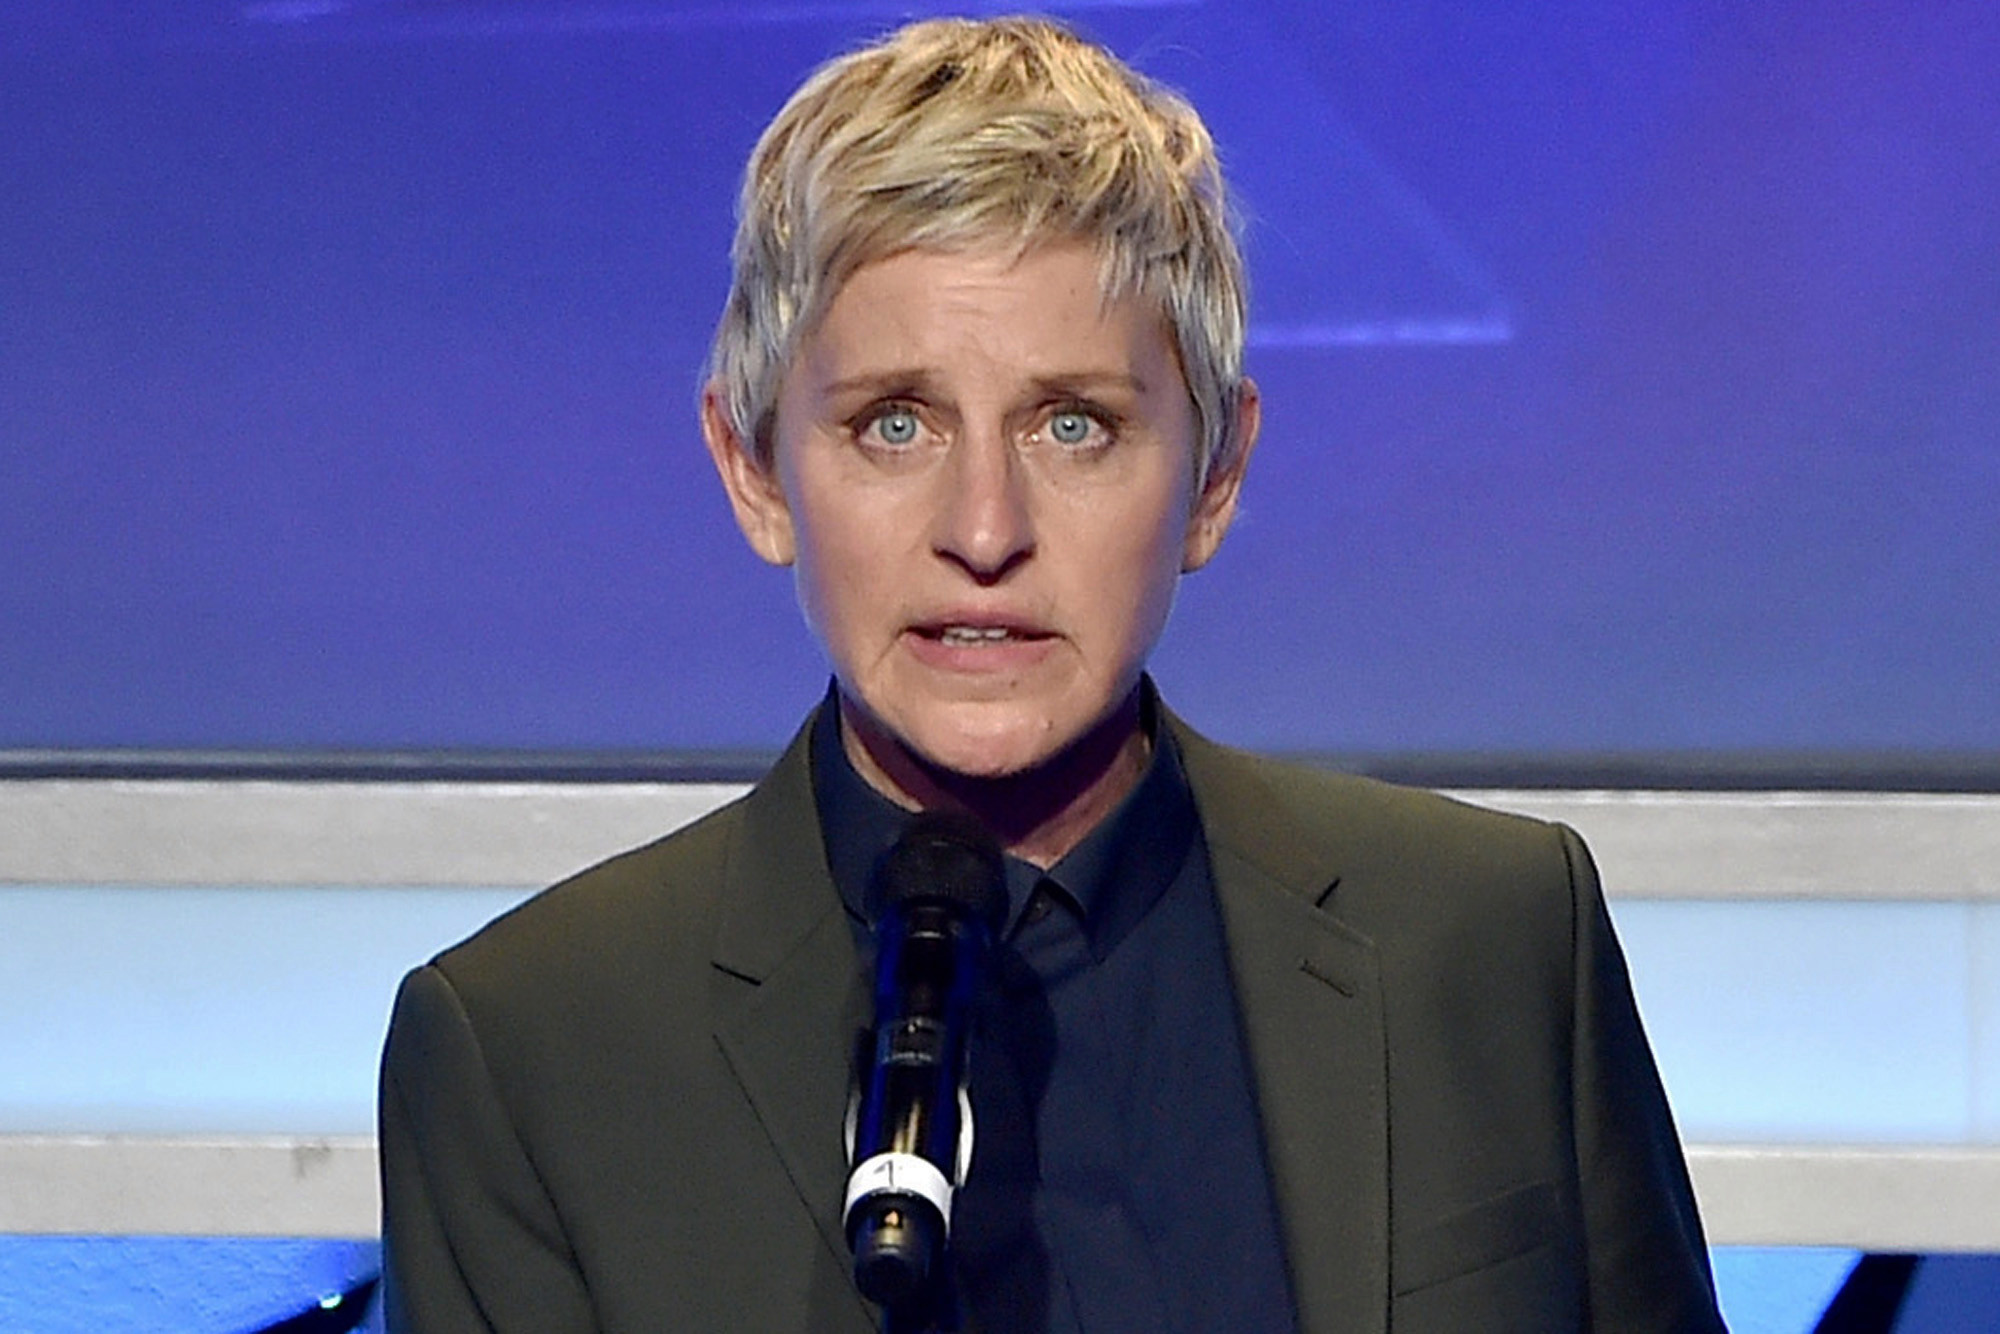 La méthode d'Ellen DeGeneres pour éviter les amendes